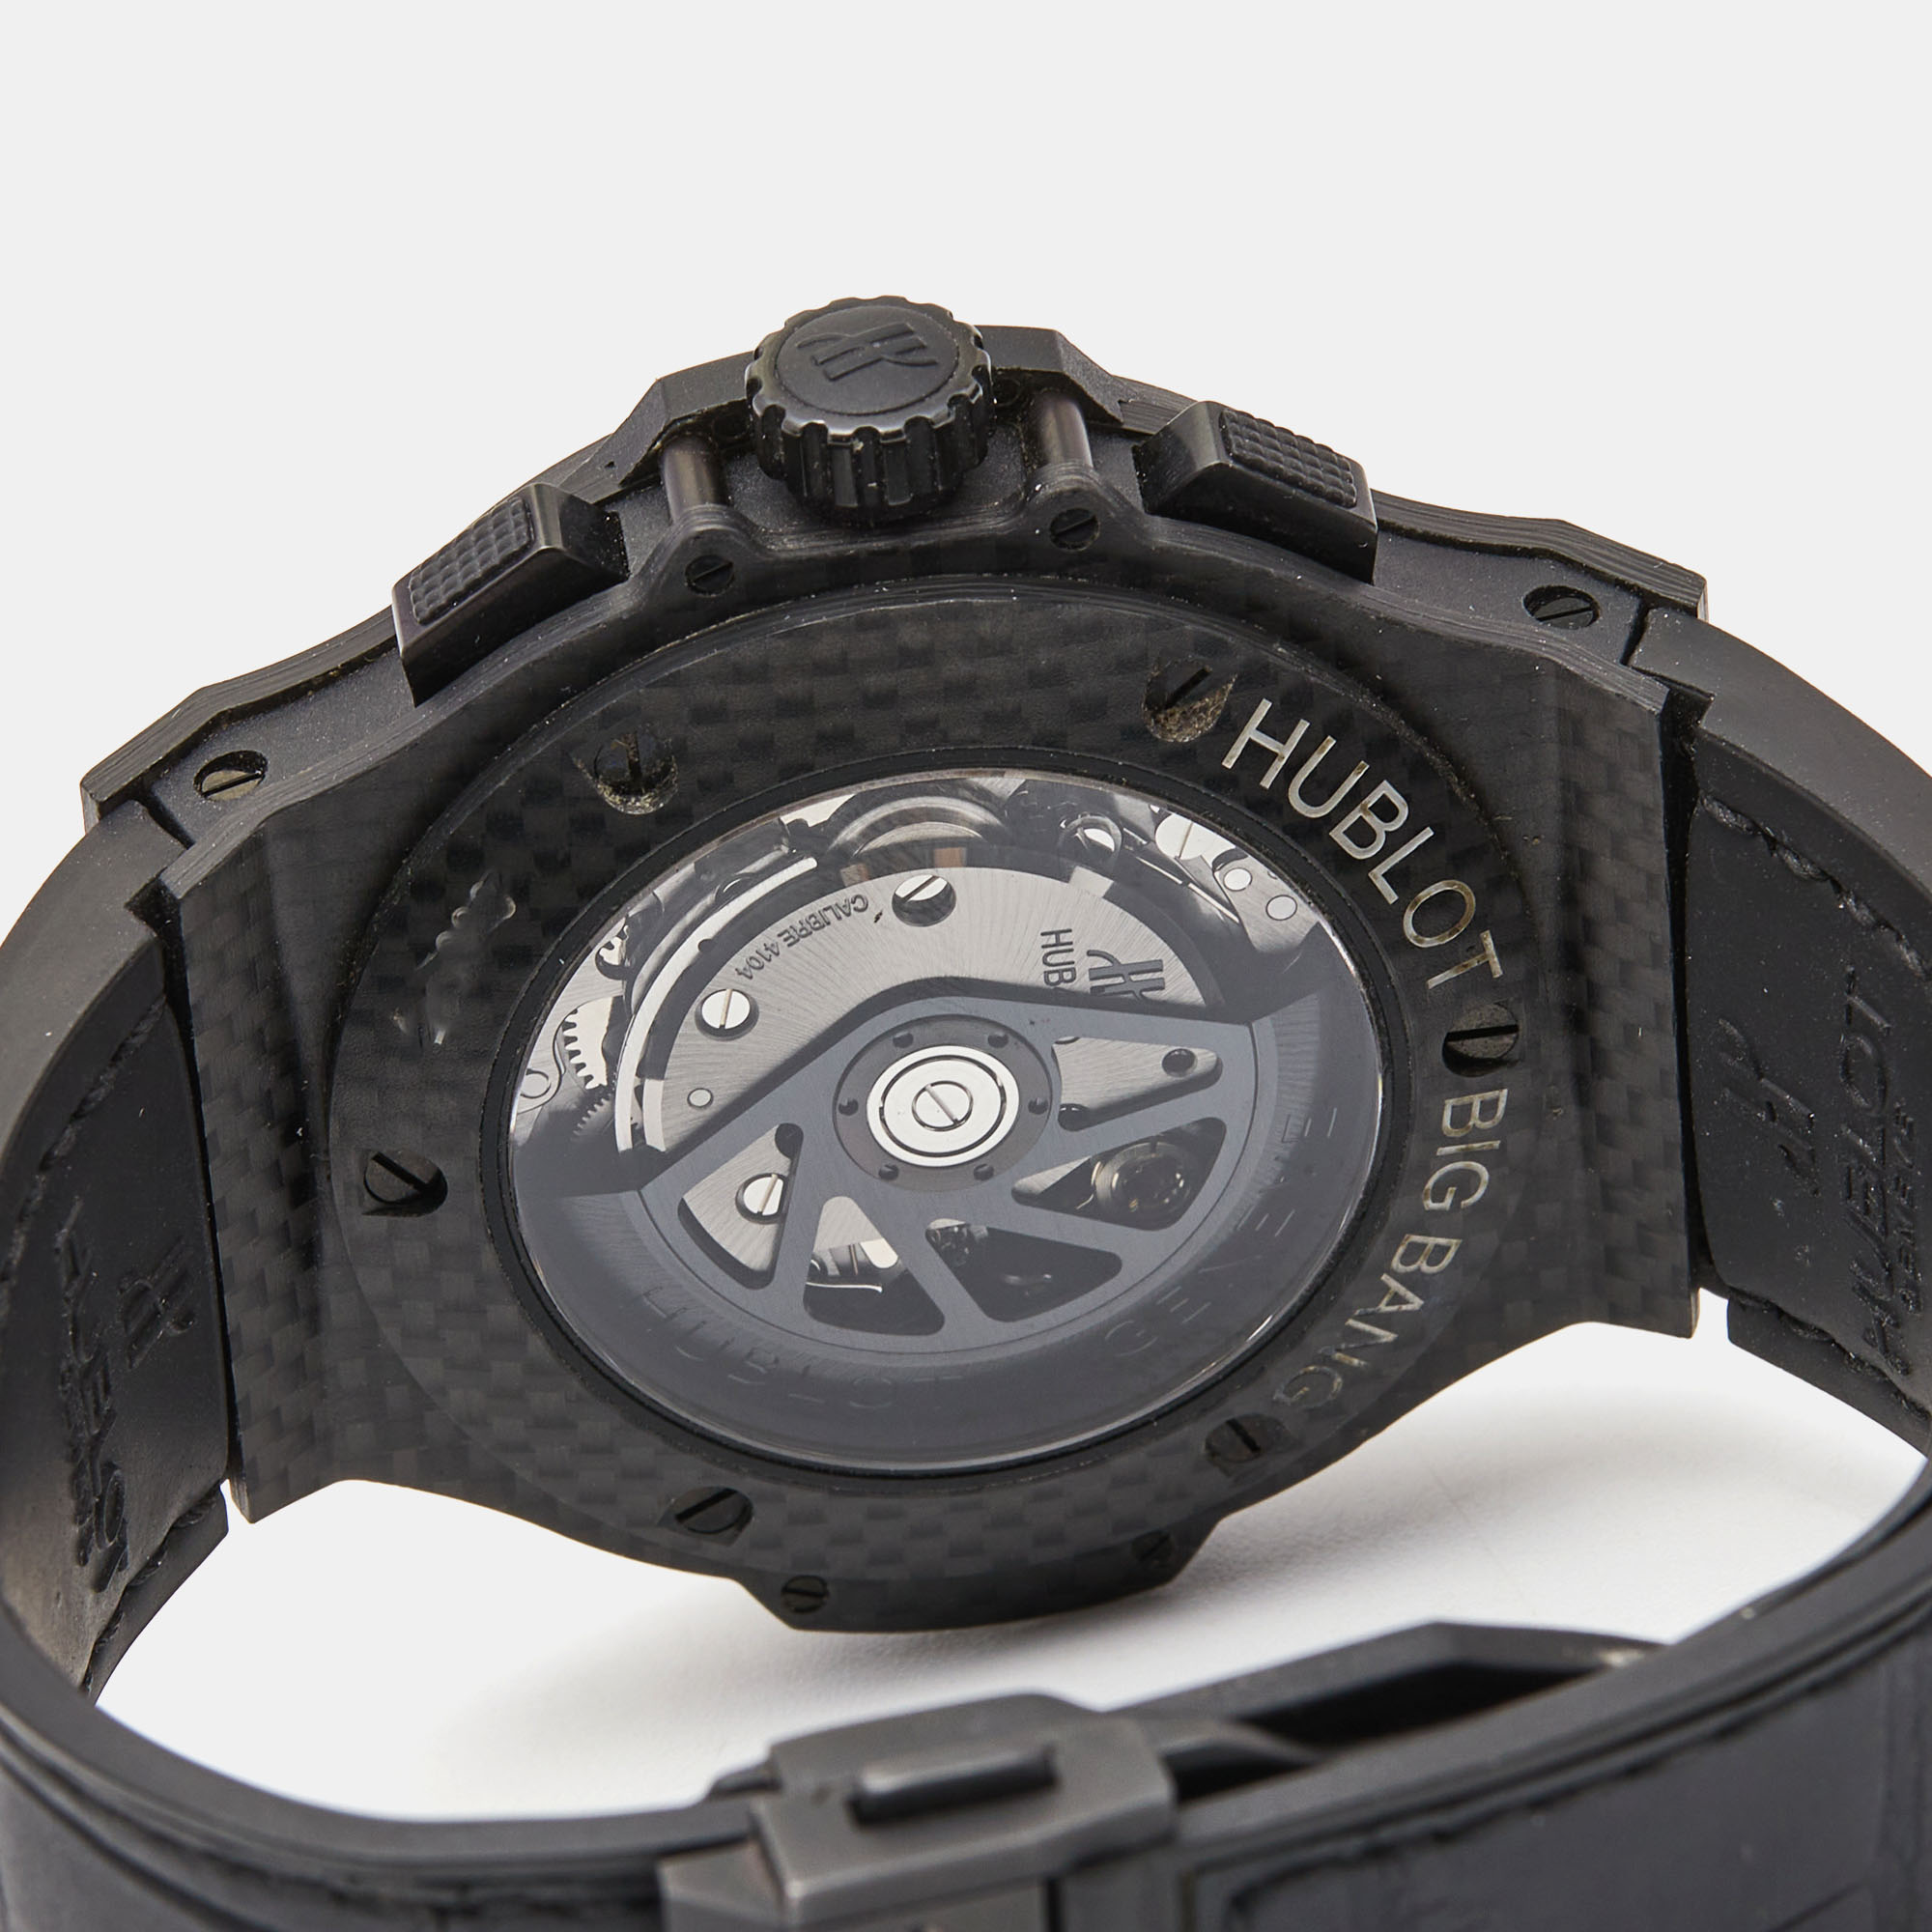 Hublot Black Carbon Fiber Rubber Alligator Leather Big Bang 301.QX.1740.GR Men's Wristwatch 44 Mm